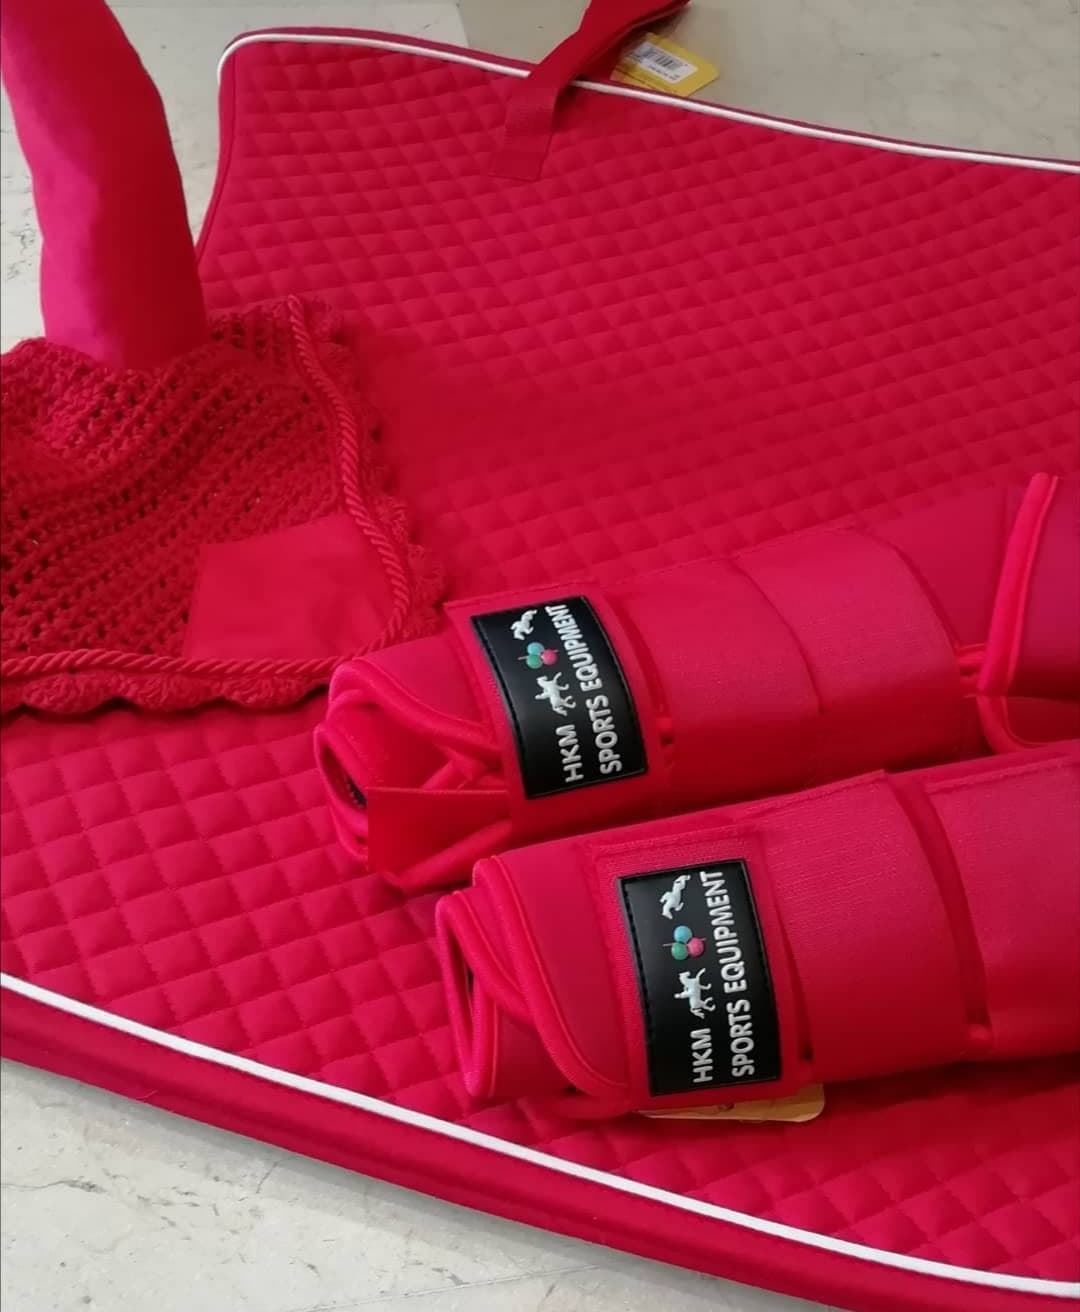 Protectores HKM Sports Equipment de softopren rojo (par) talla XL - Imagen 1